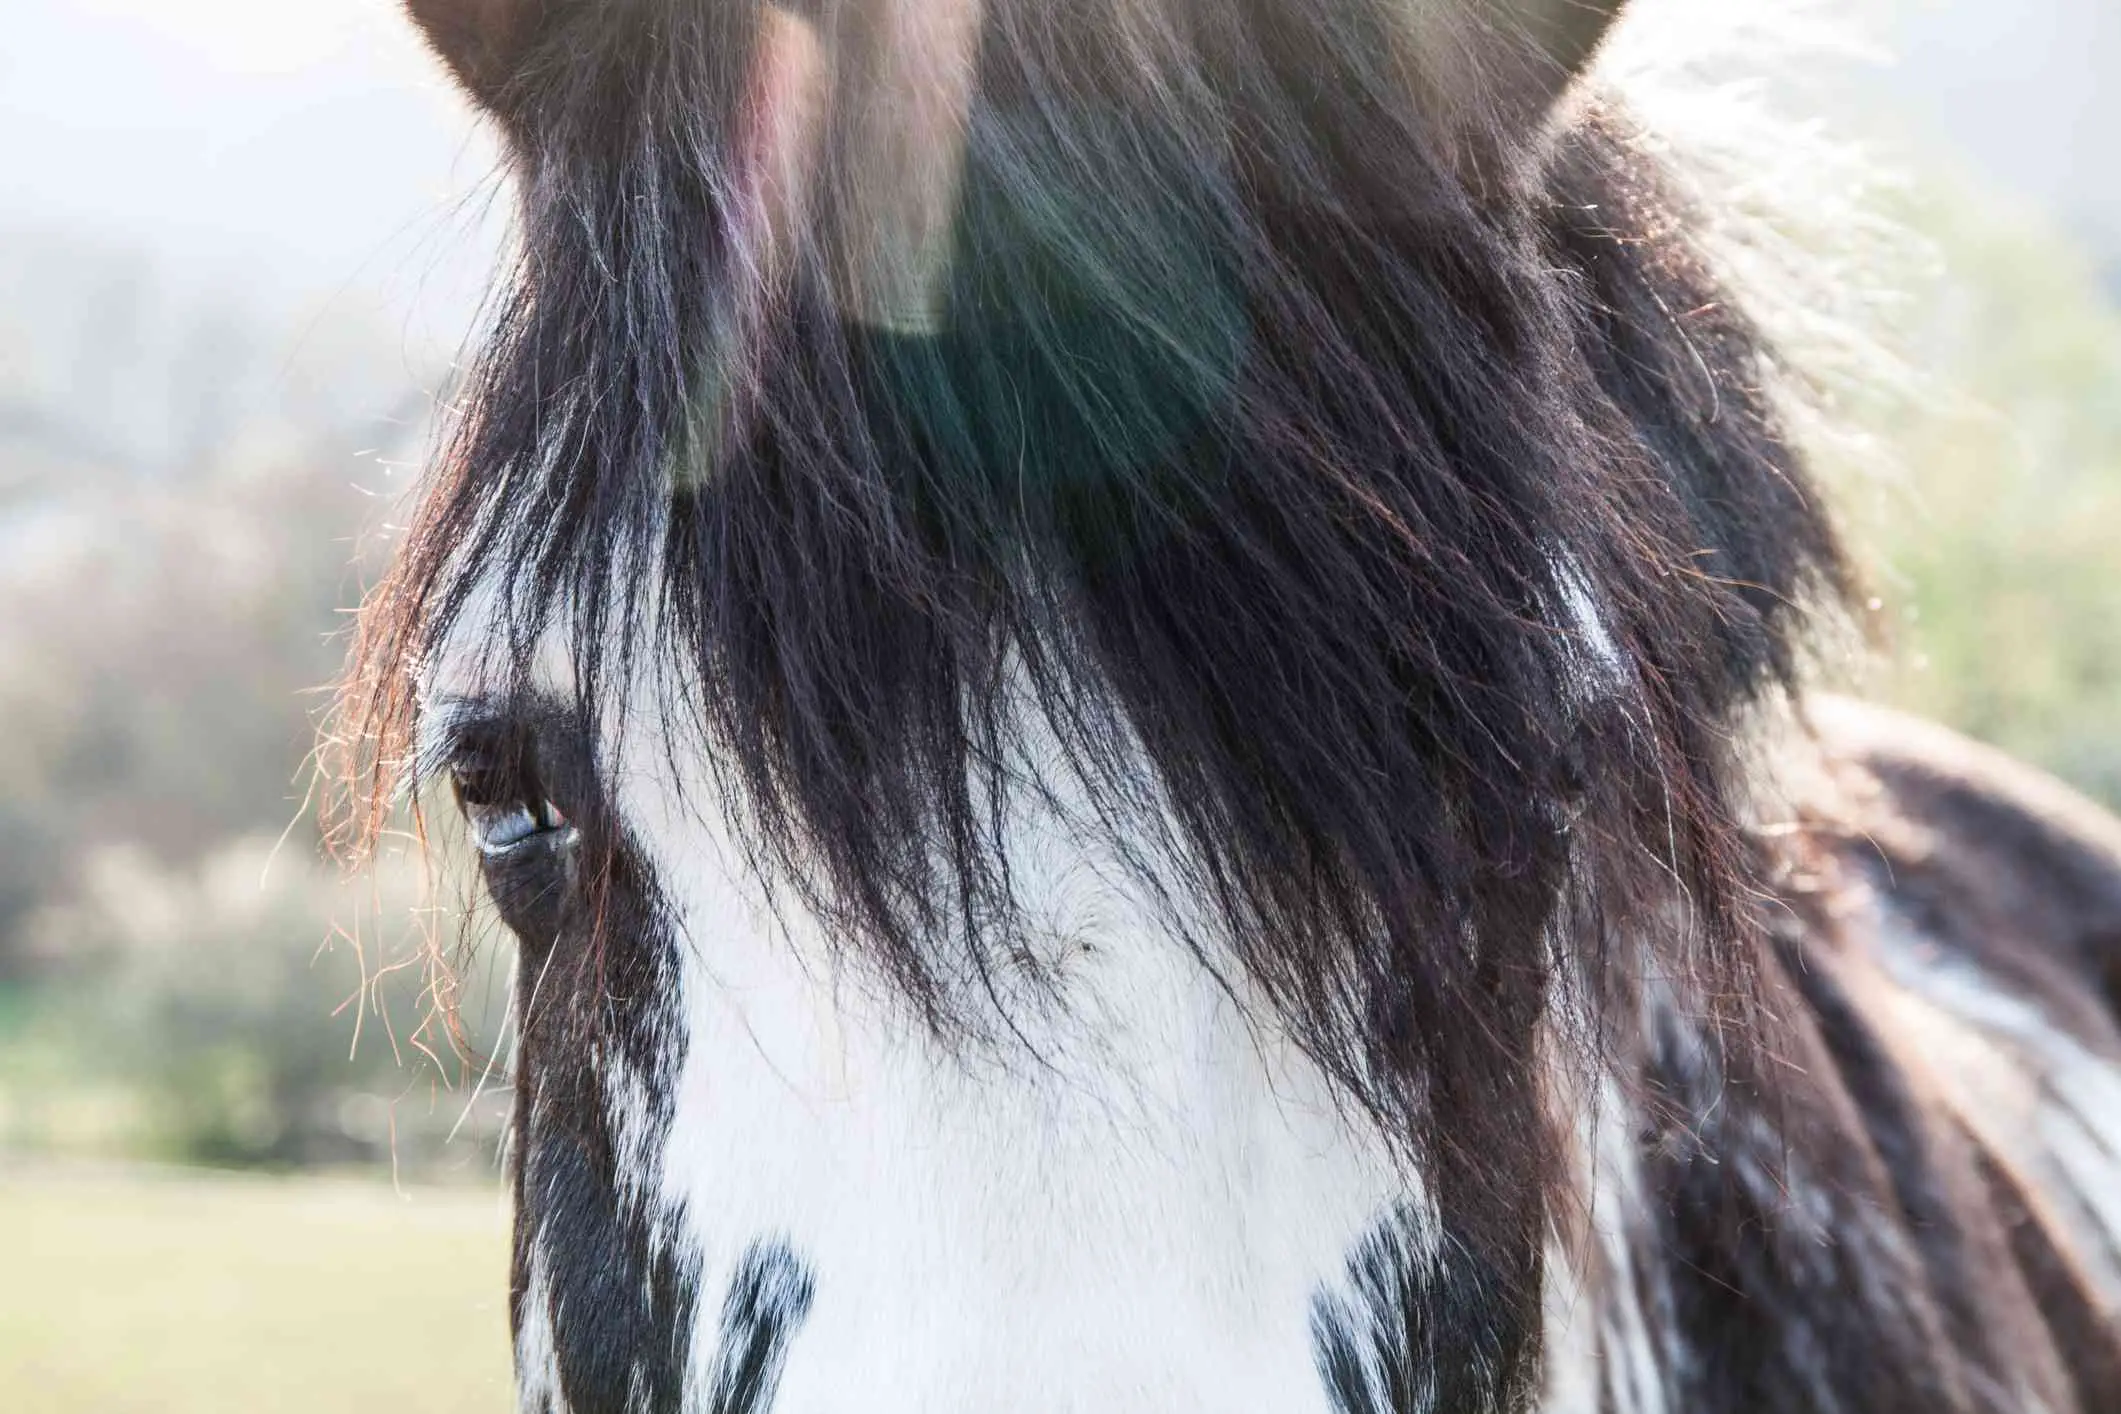 Exemplo de aberrações cromáticas em cabelo de cavalo